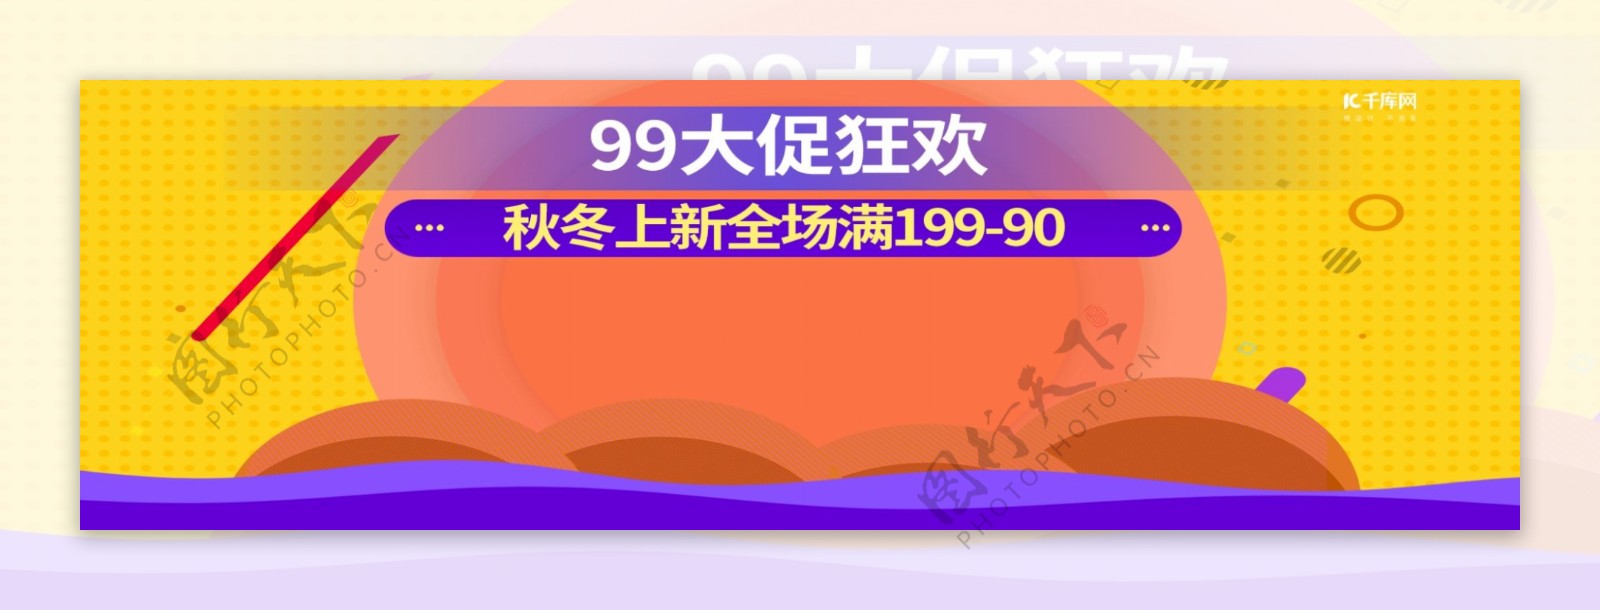 撞色99大促狂欢促销夏季清仓秋季上新banner